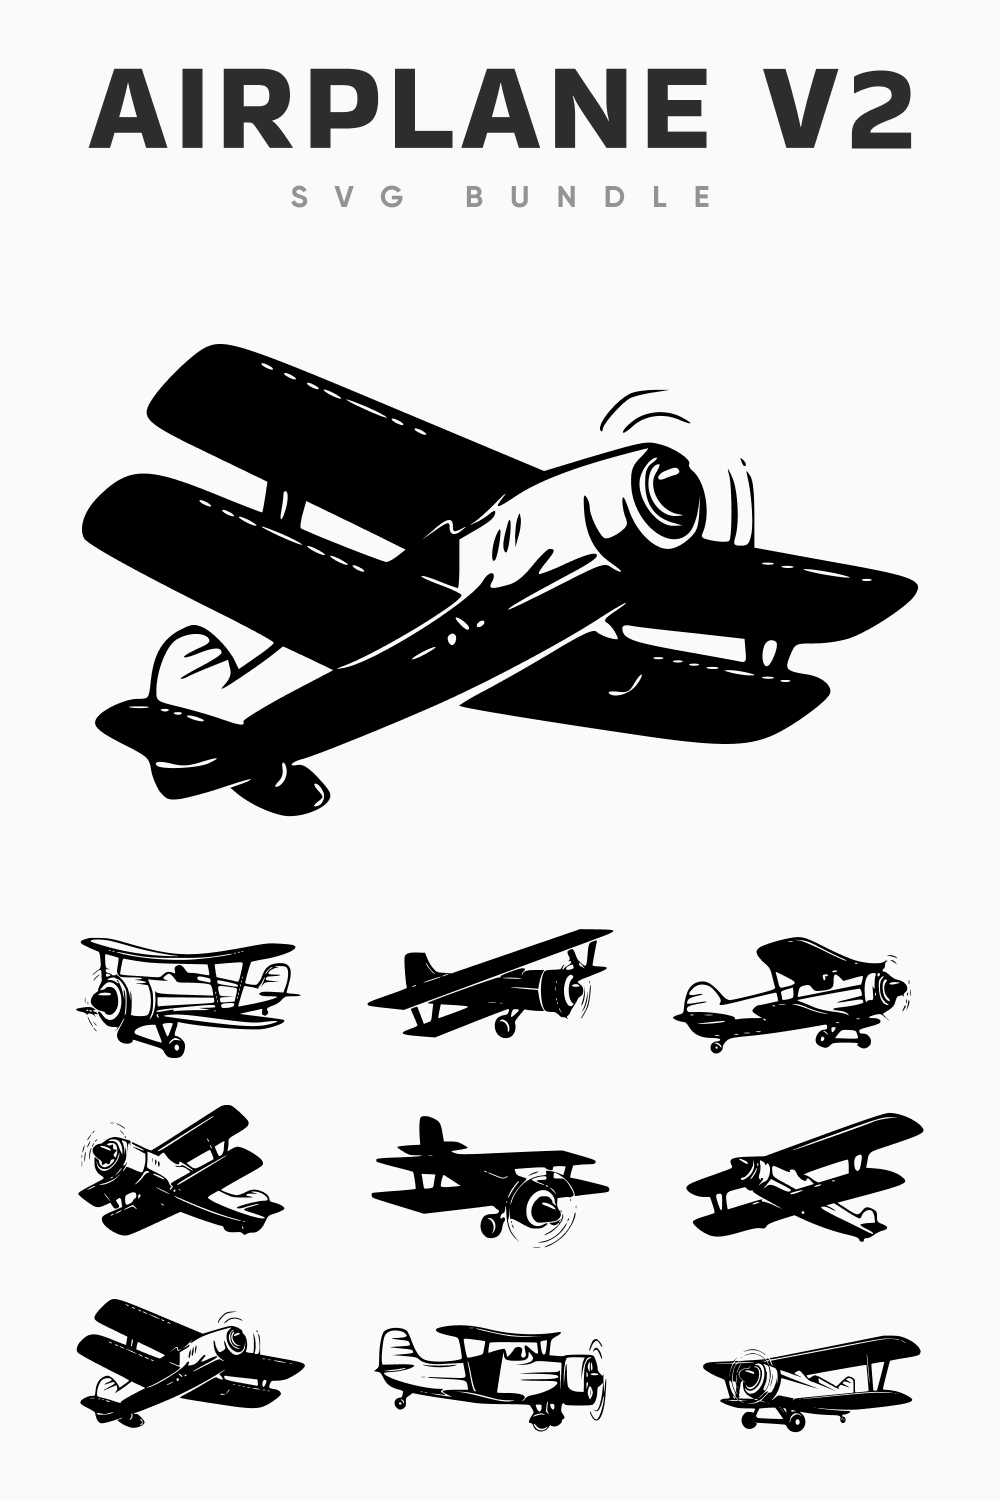 Airplane v2 SVG bundle.